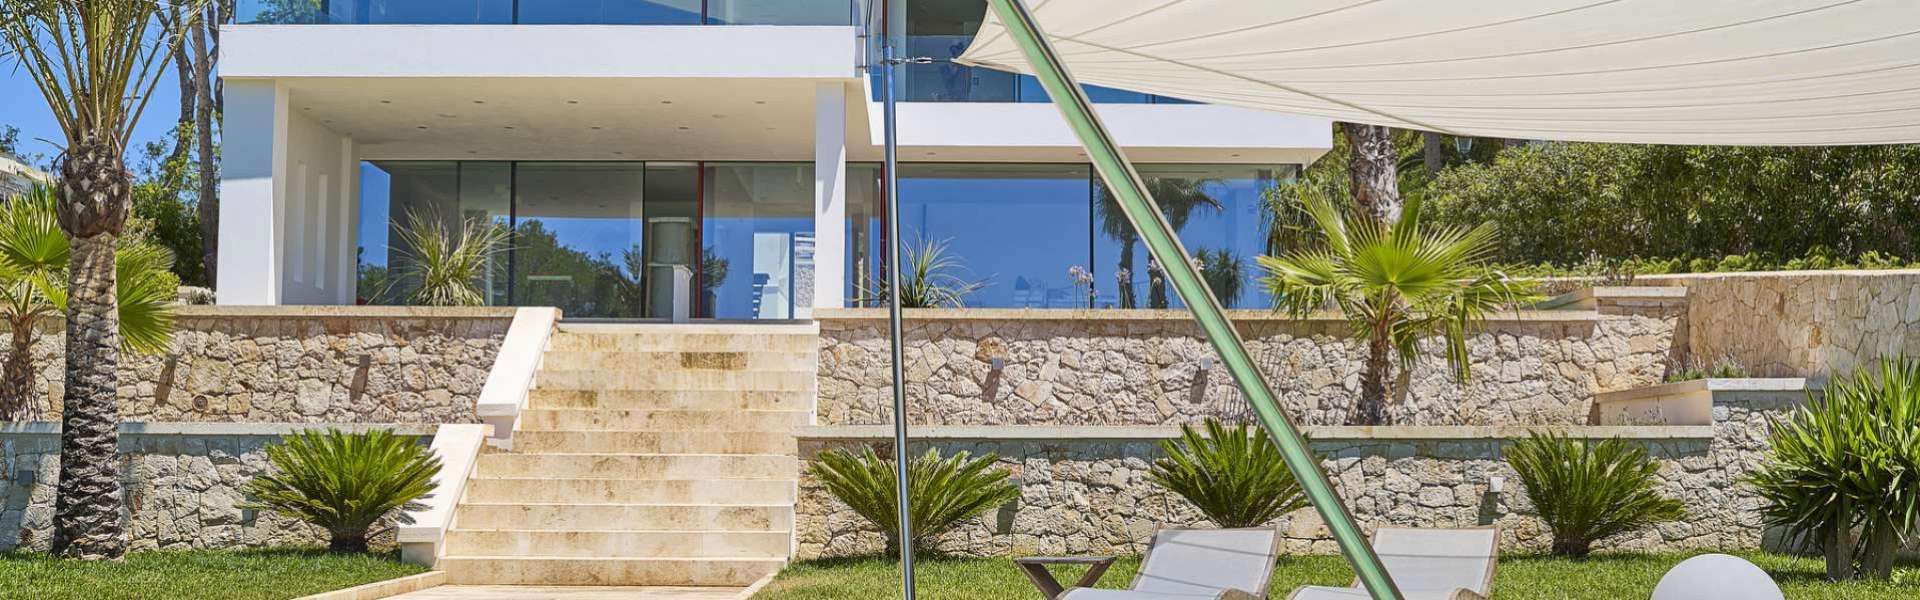 Porto Petro - Moderne Villa mit direktem Meerzugang in exponierter Lage